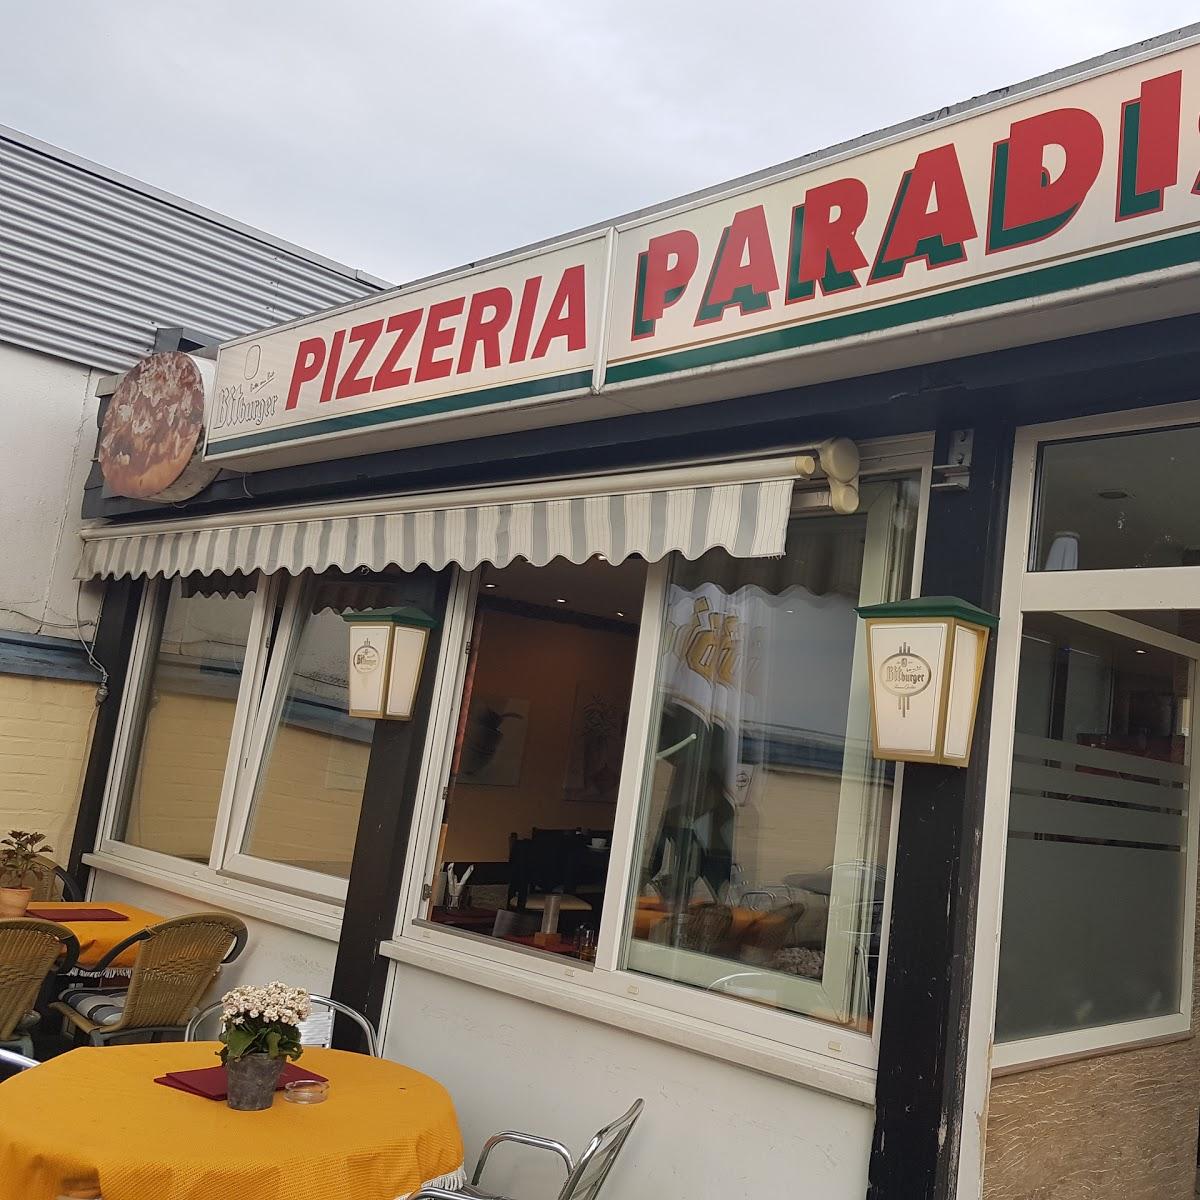 Restaurant "Pizzeria Paradiso" in Schwerte